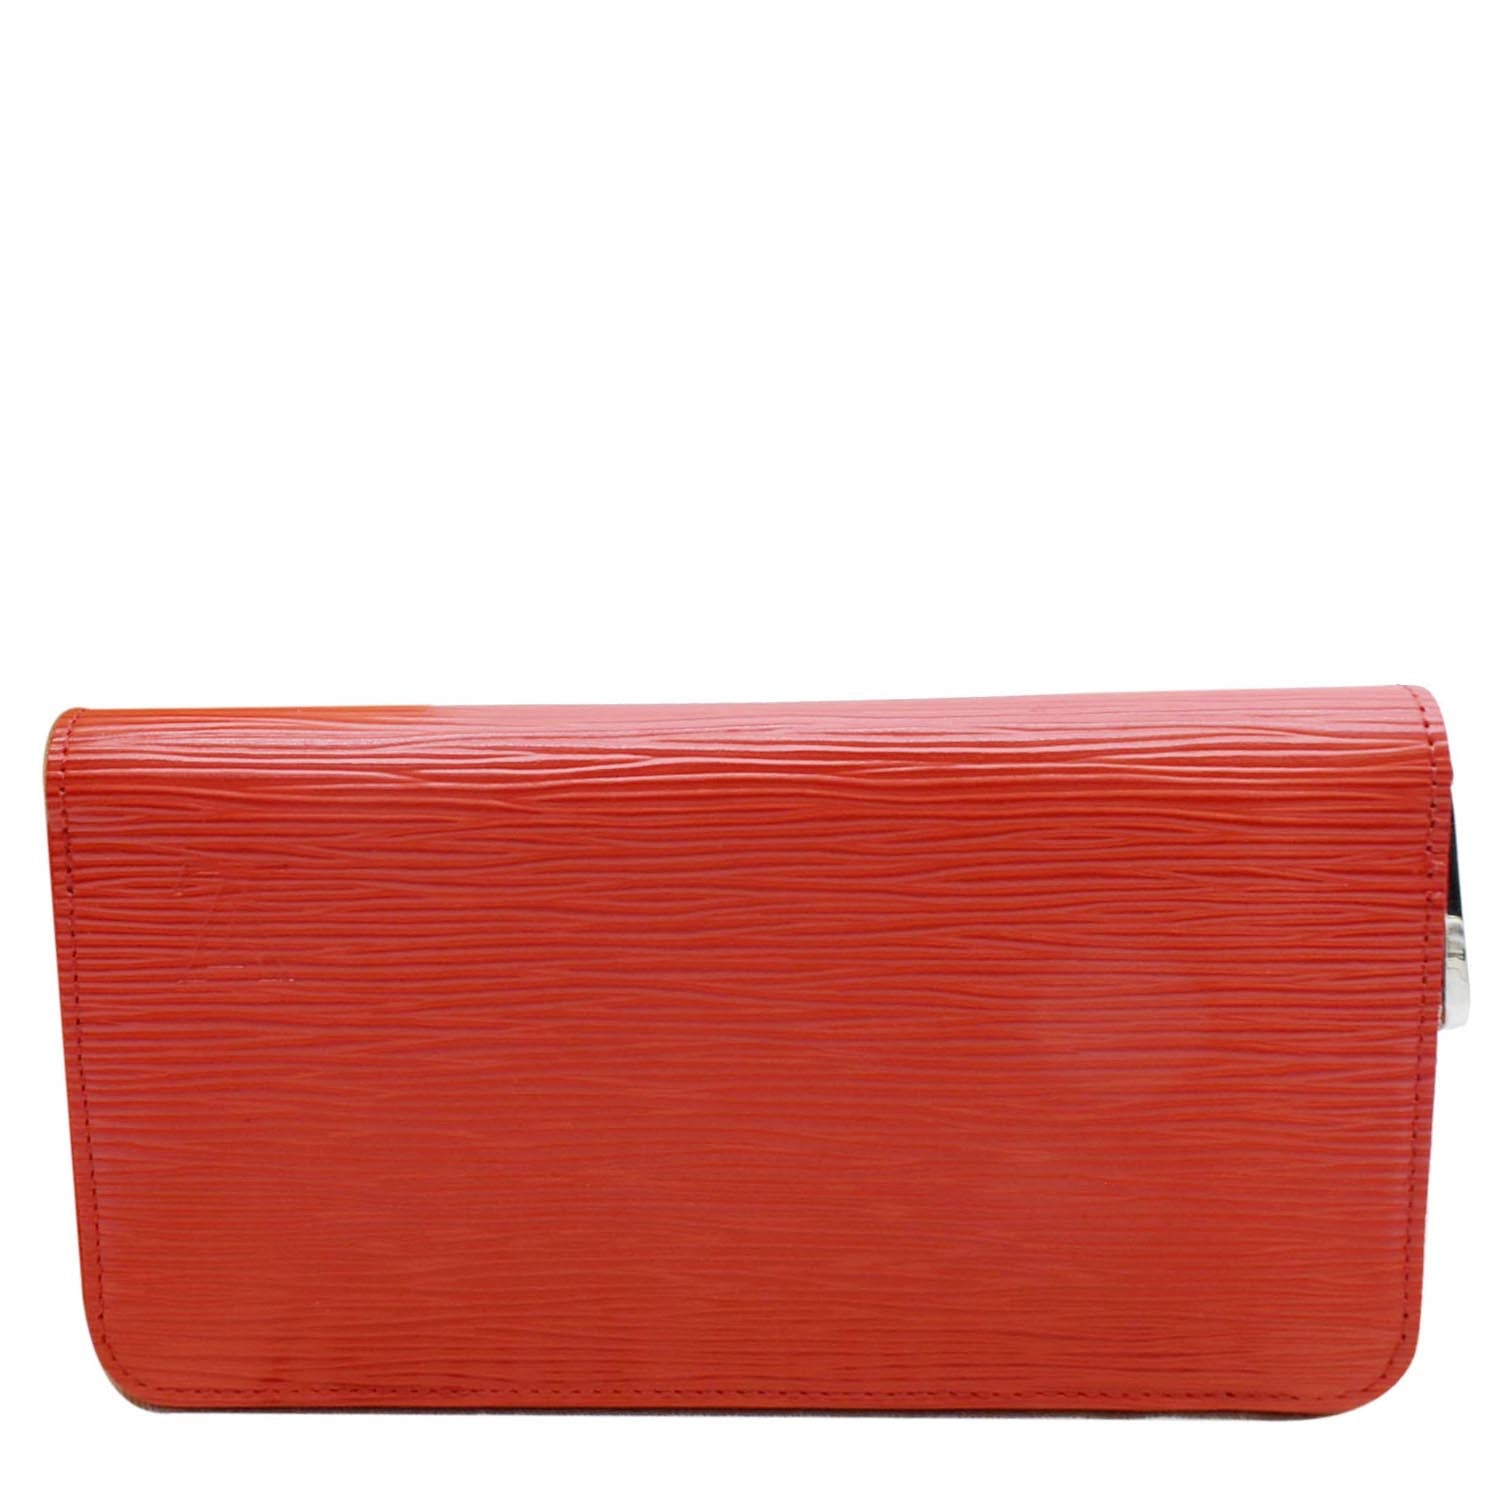 Authentic Louis Vuitton Vintage 1996 Red Epi Leather Card case / Mini Wallet